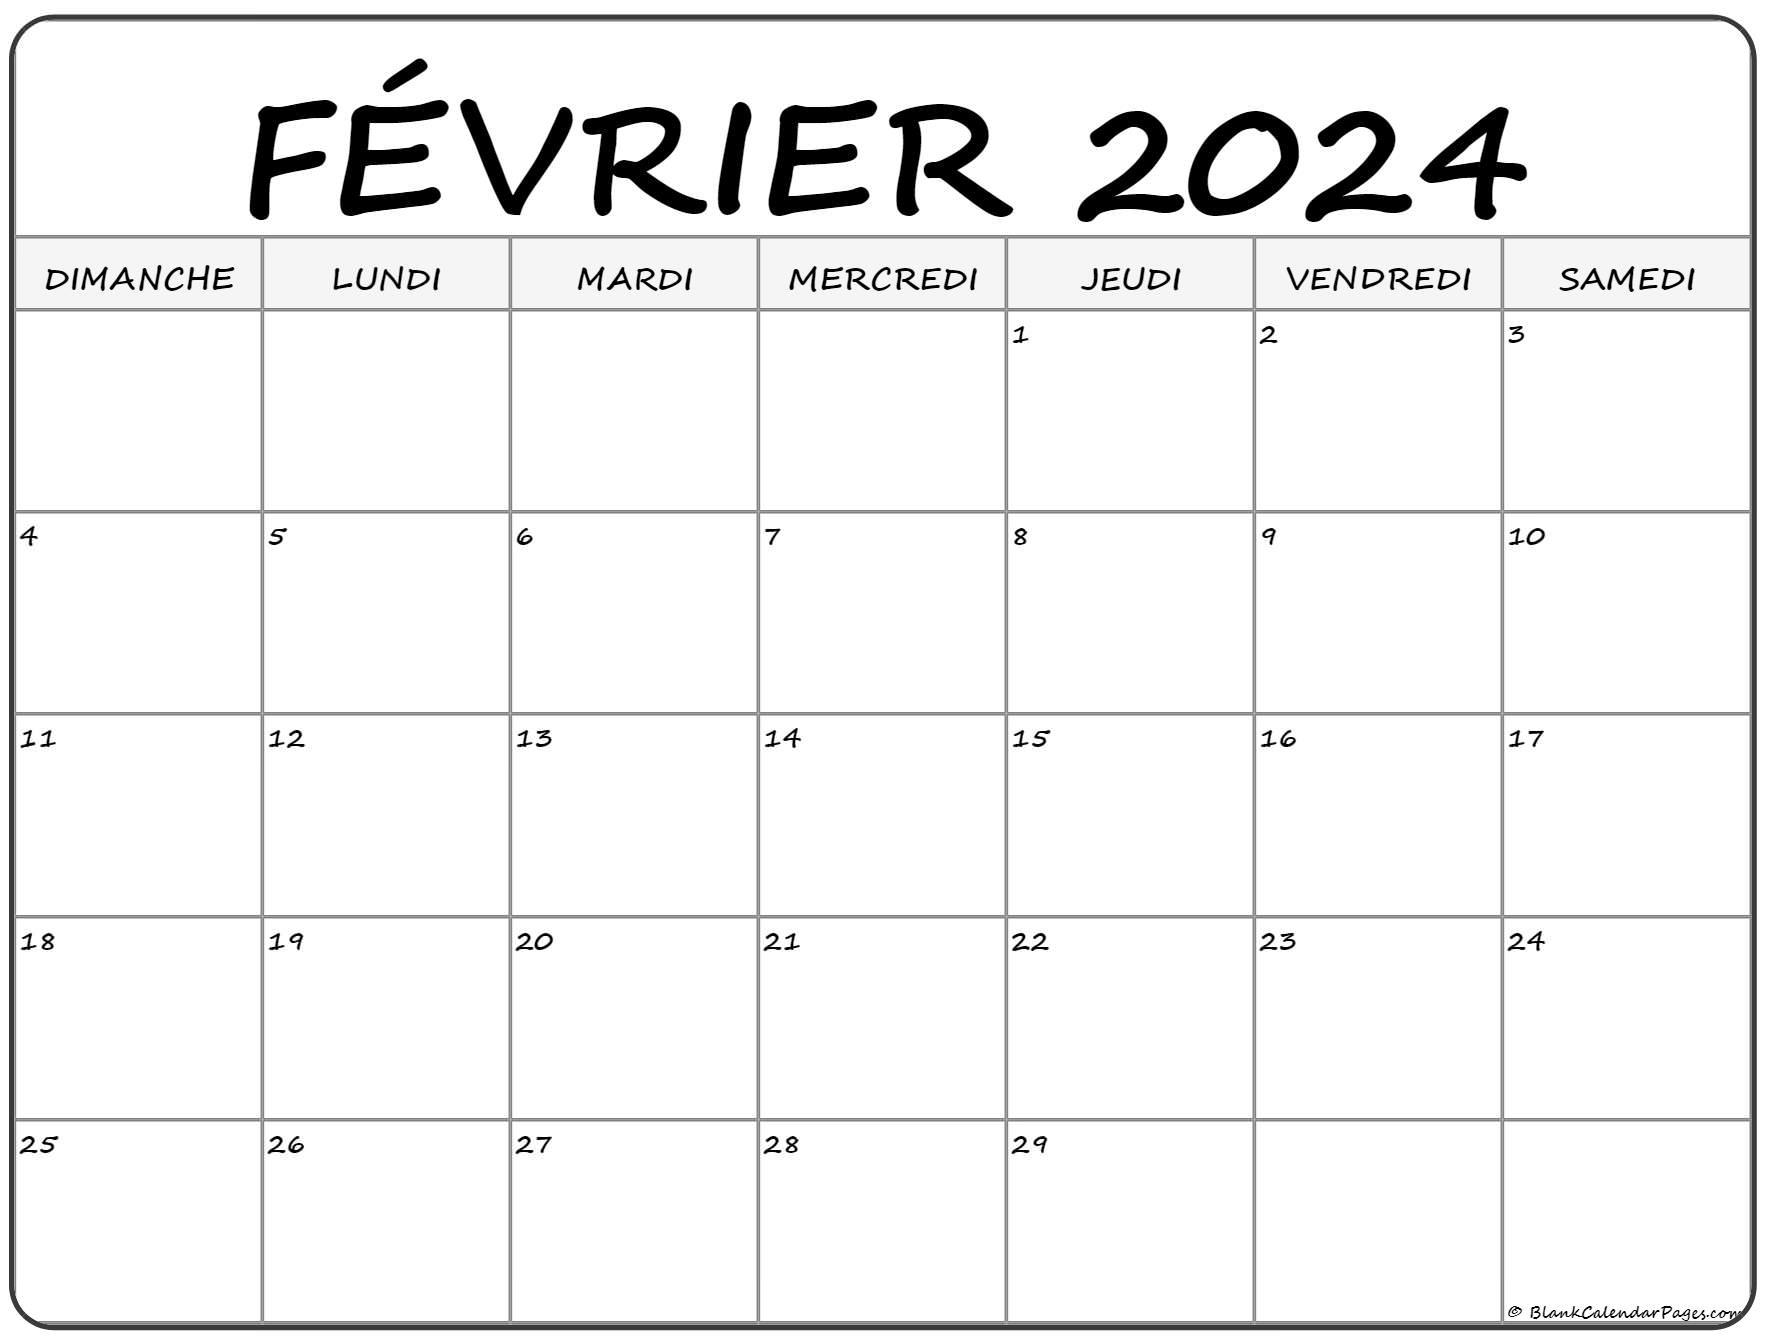 Calendrier Janvier Fevrier 2022 février 2022 calendrier imprimable | Calendrier gratuit